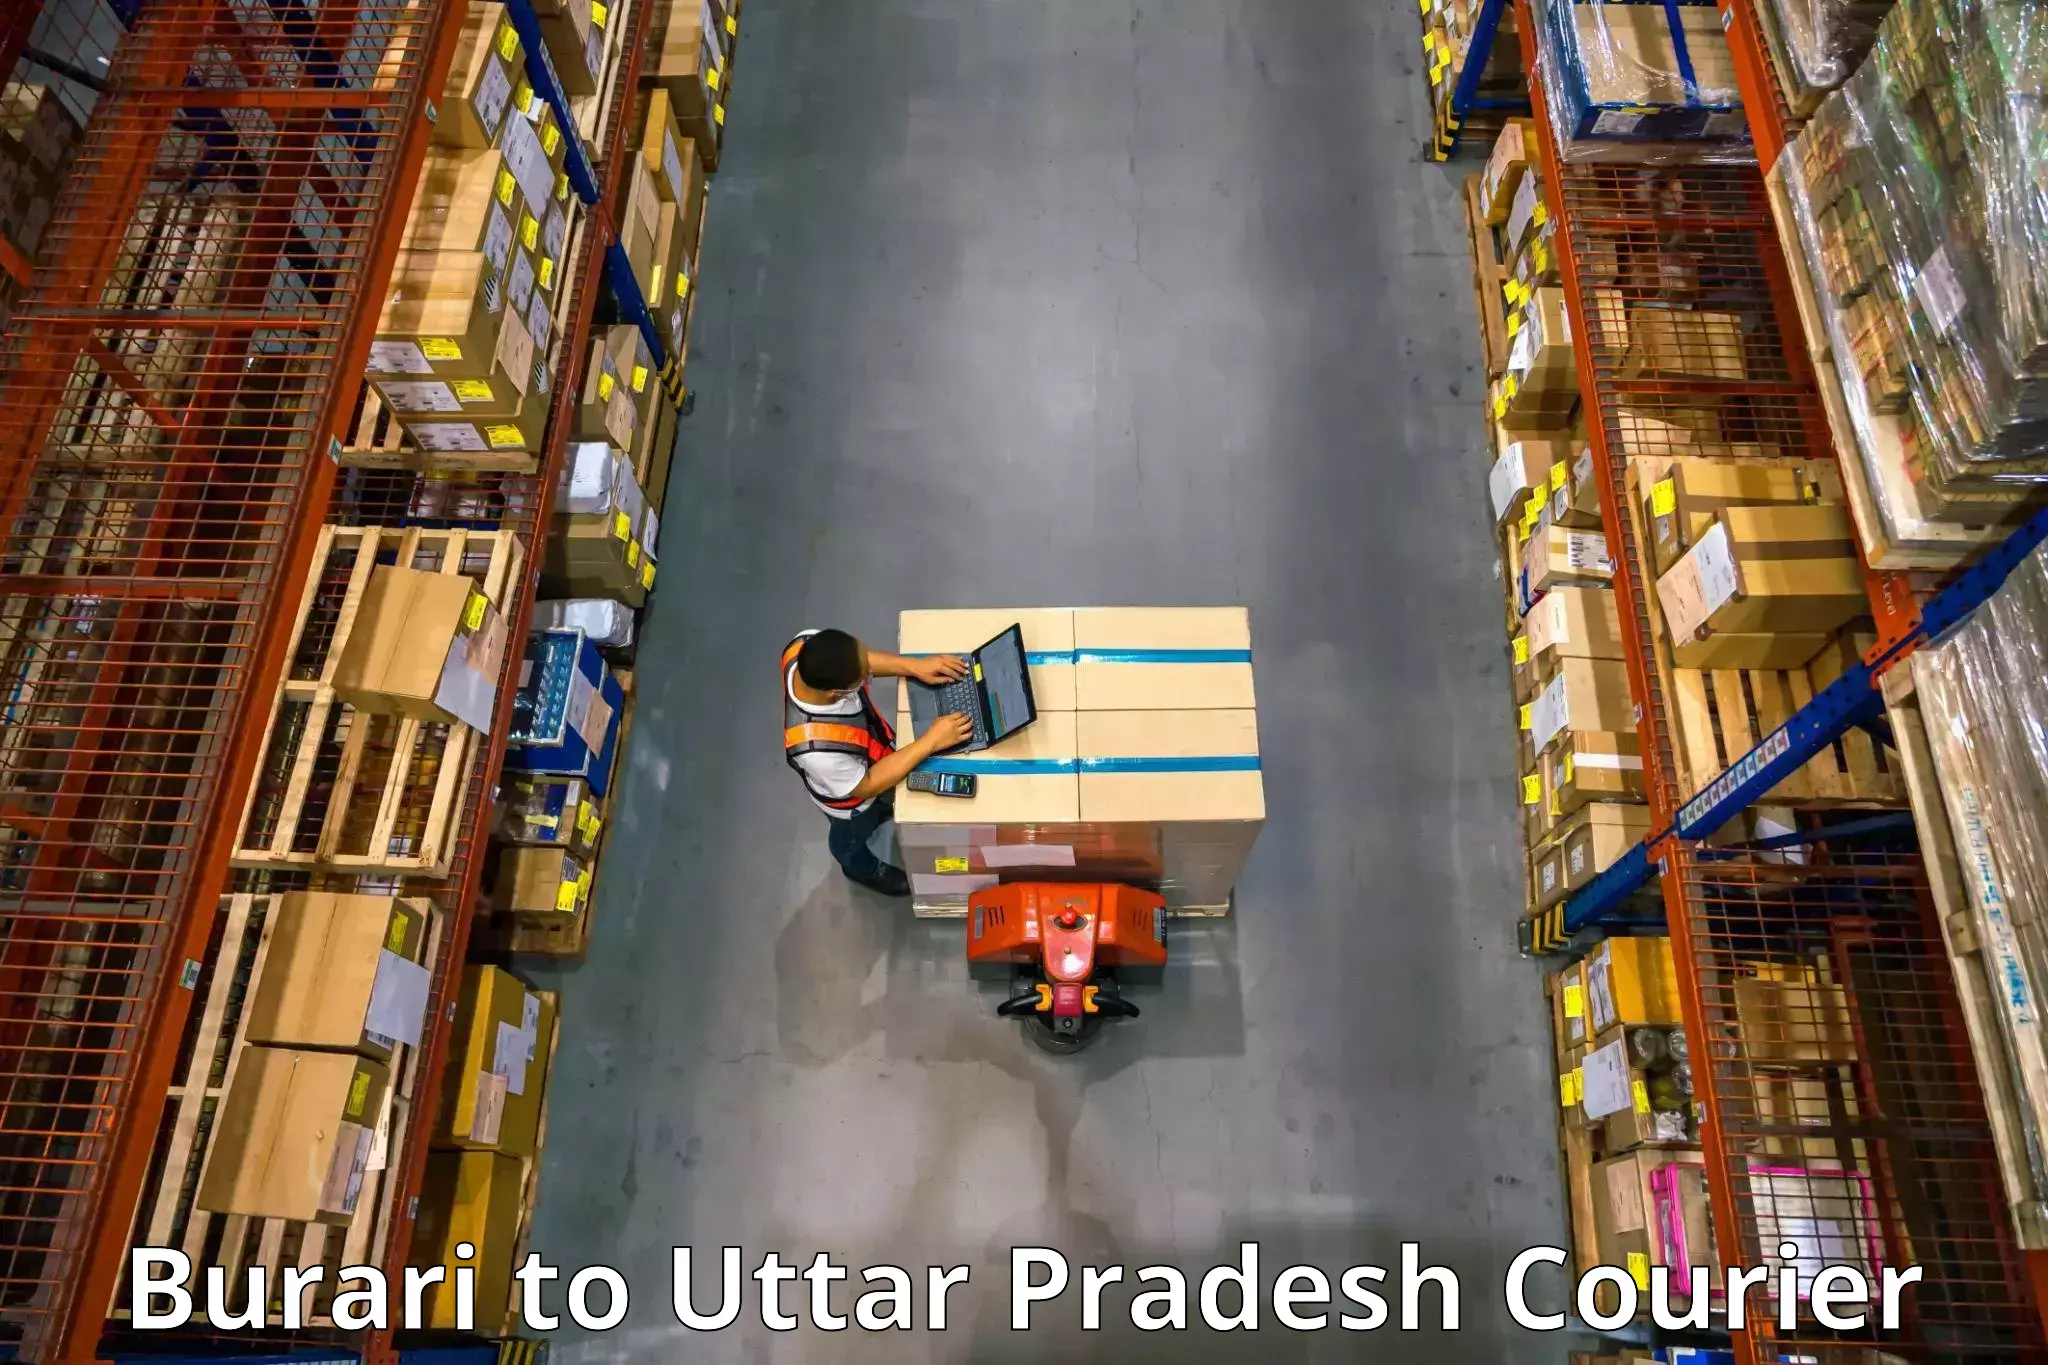 Furniture transport professionals Burari to Agra